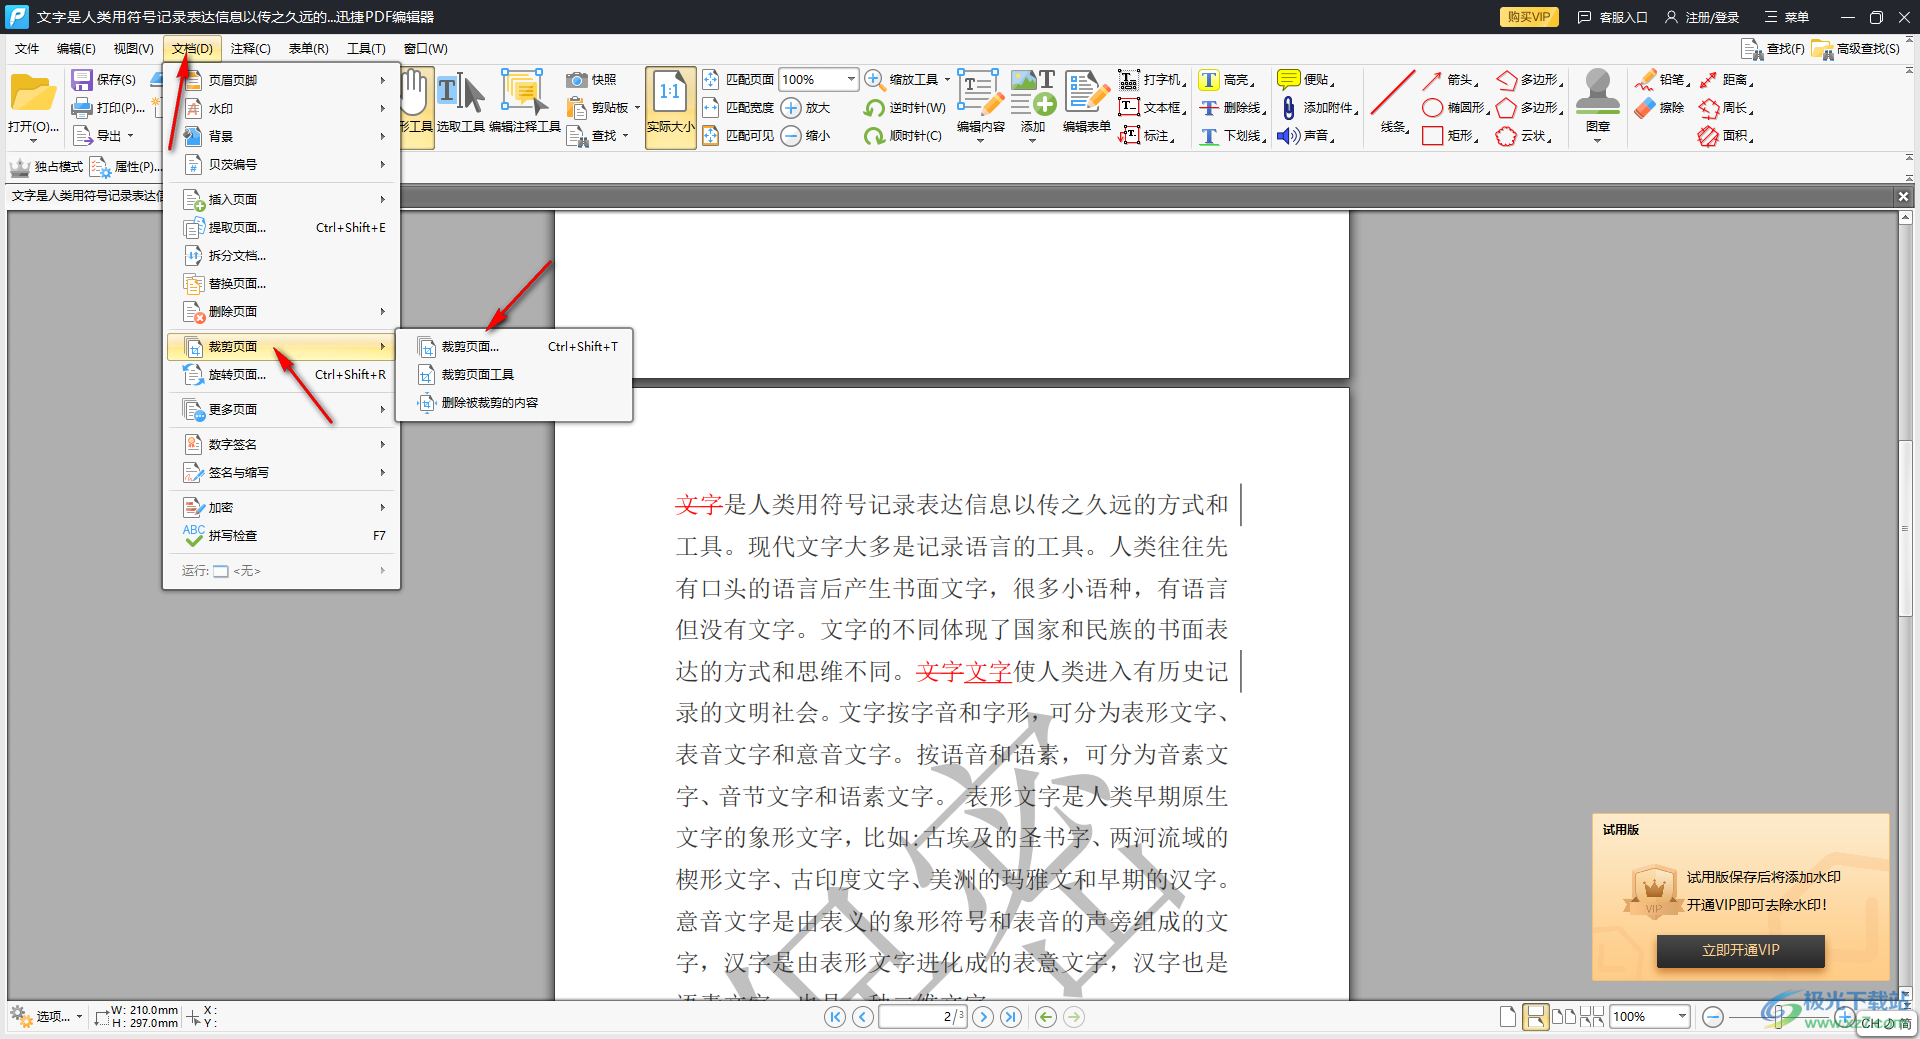 迅捷PDF编辑器裁剪页面的方法